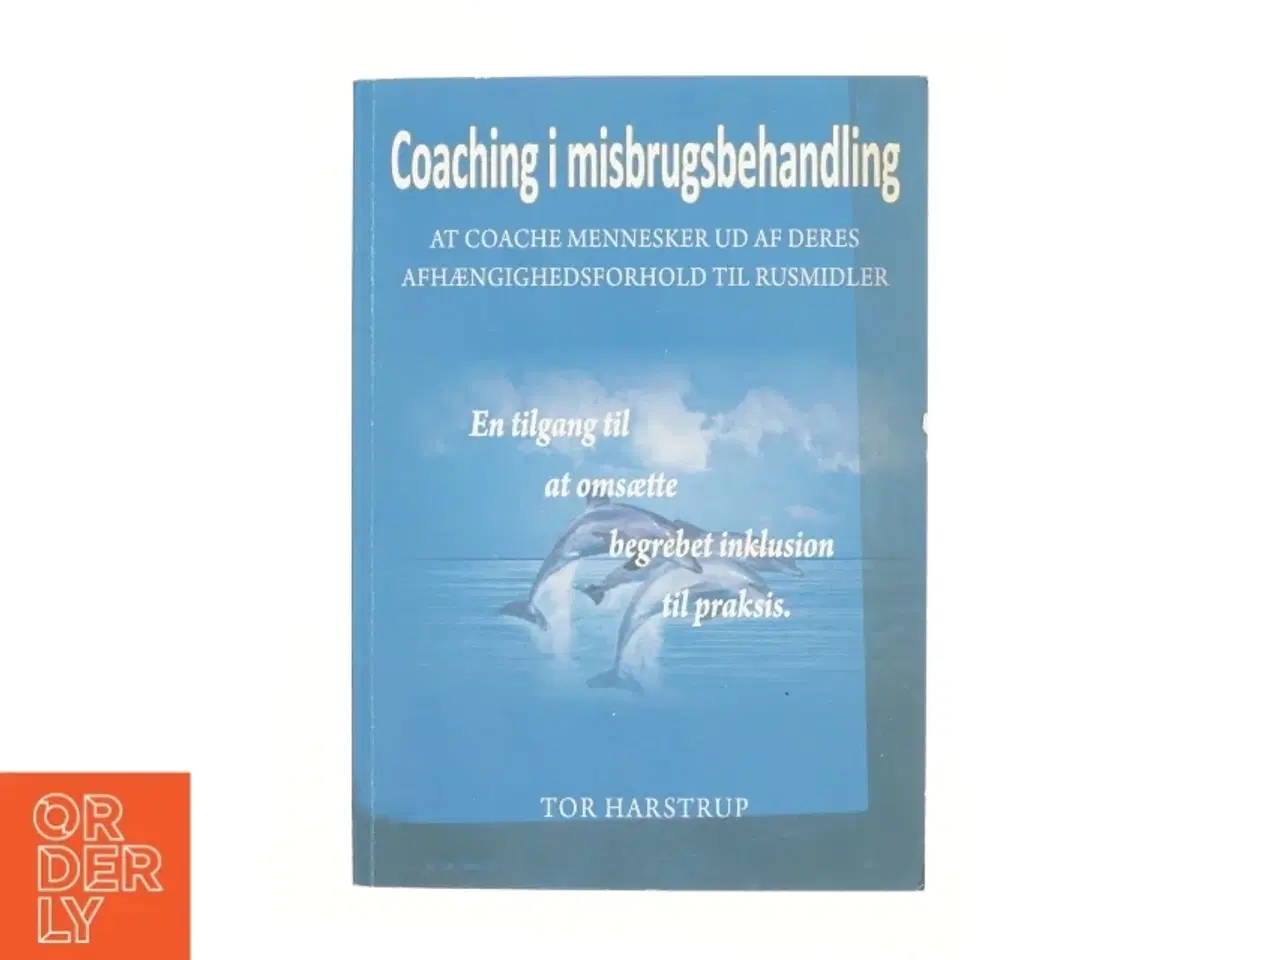 Billede 1 - Coaching i misbrugsbehandling : at coache mennesker ud af afhængighedsforholdet til rusmidler : læremetoden coaching som værktøj til at omsætte begreb